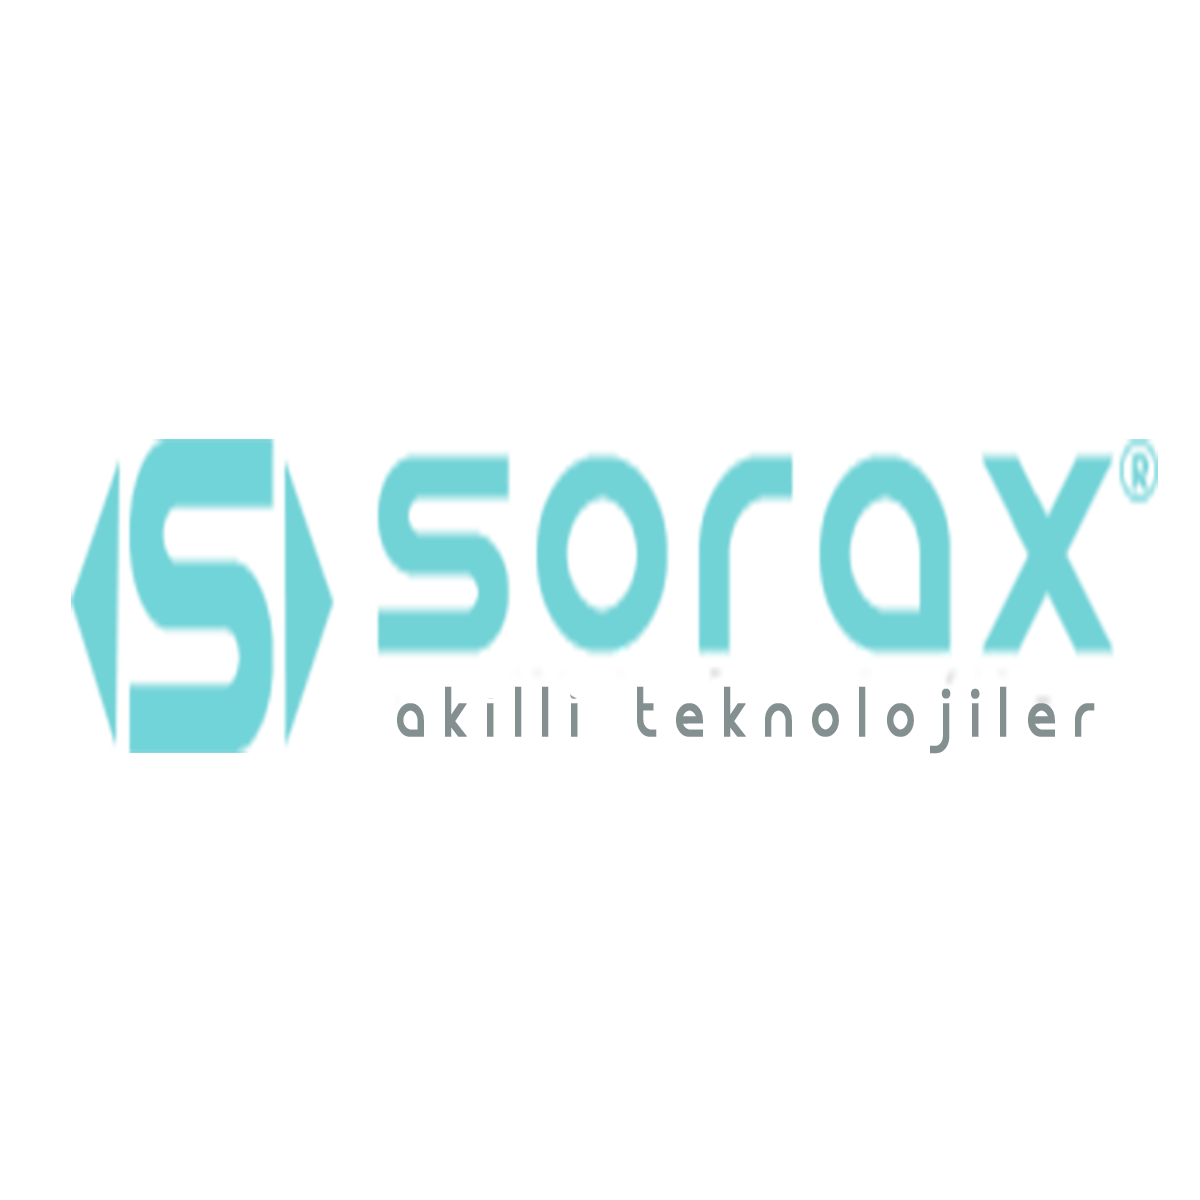 Sorax Akıllı Teknolojiler San ve  Tic Ltd Şti